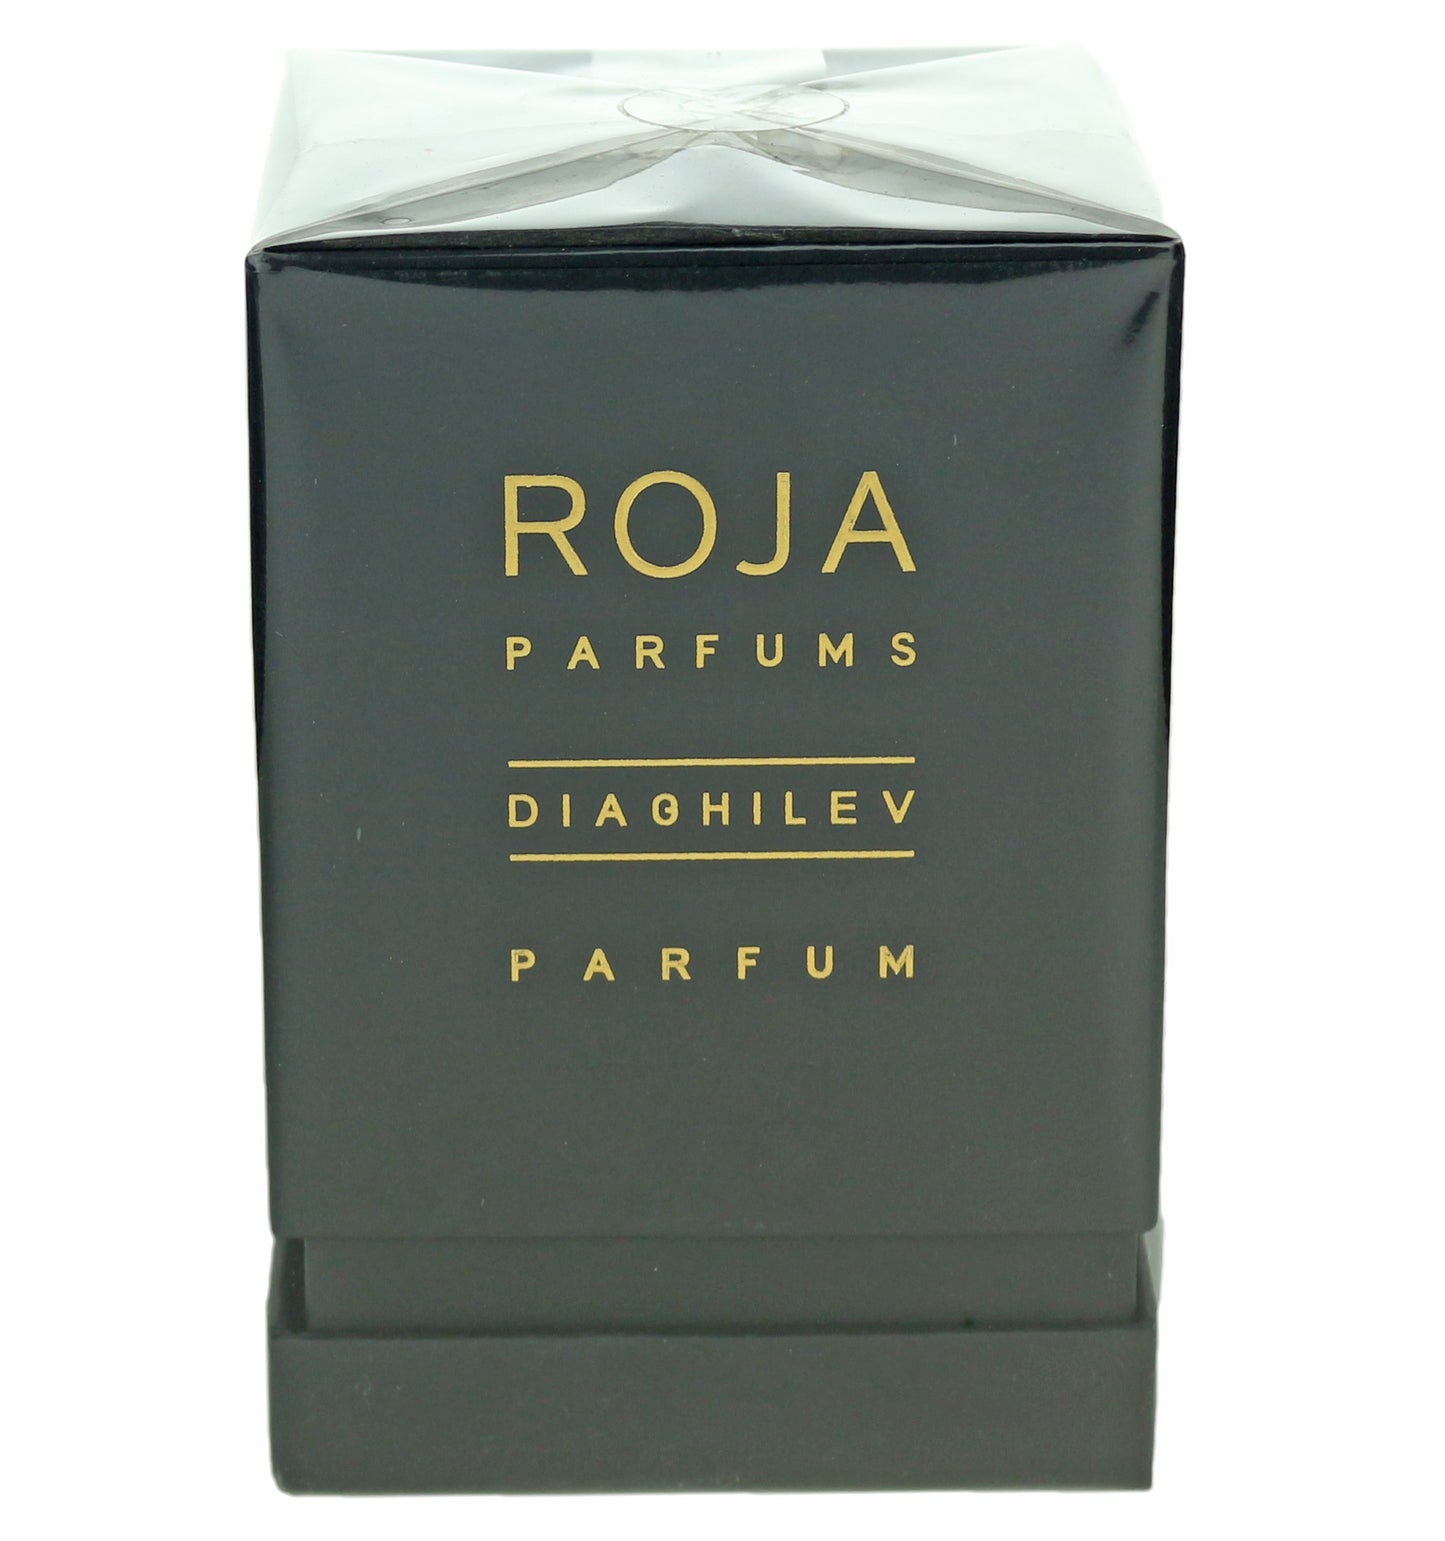 Roja Dove 'Diaghilev' Parfum 3.4oz /100ml New In Box